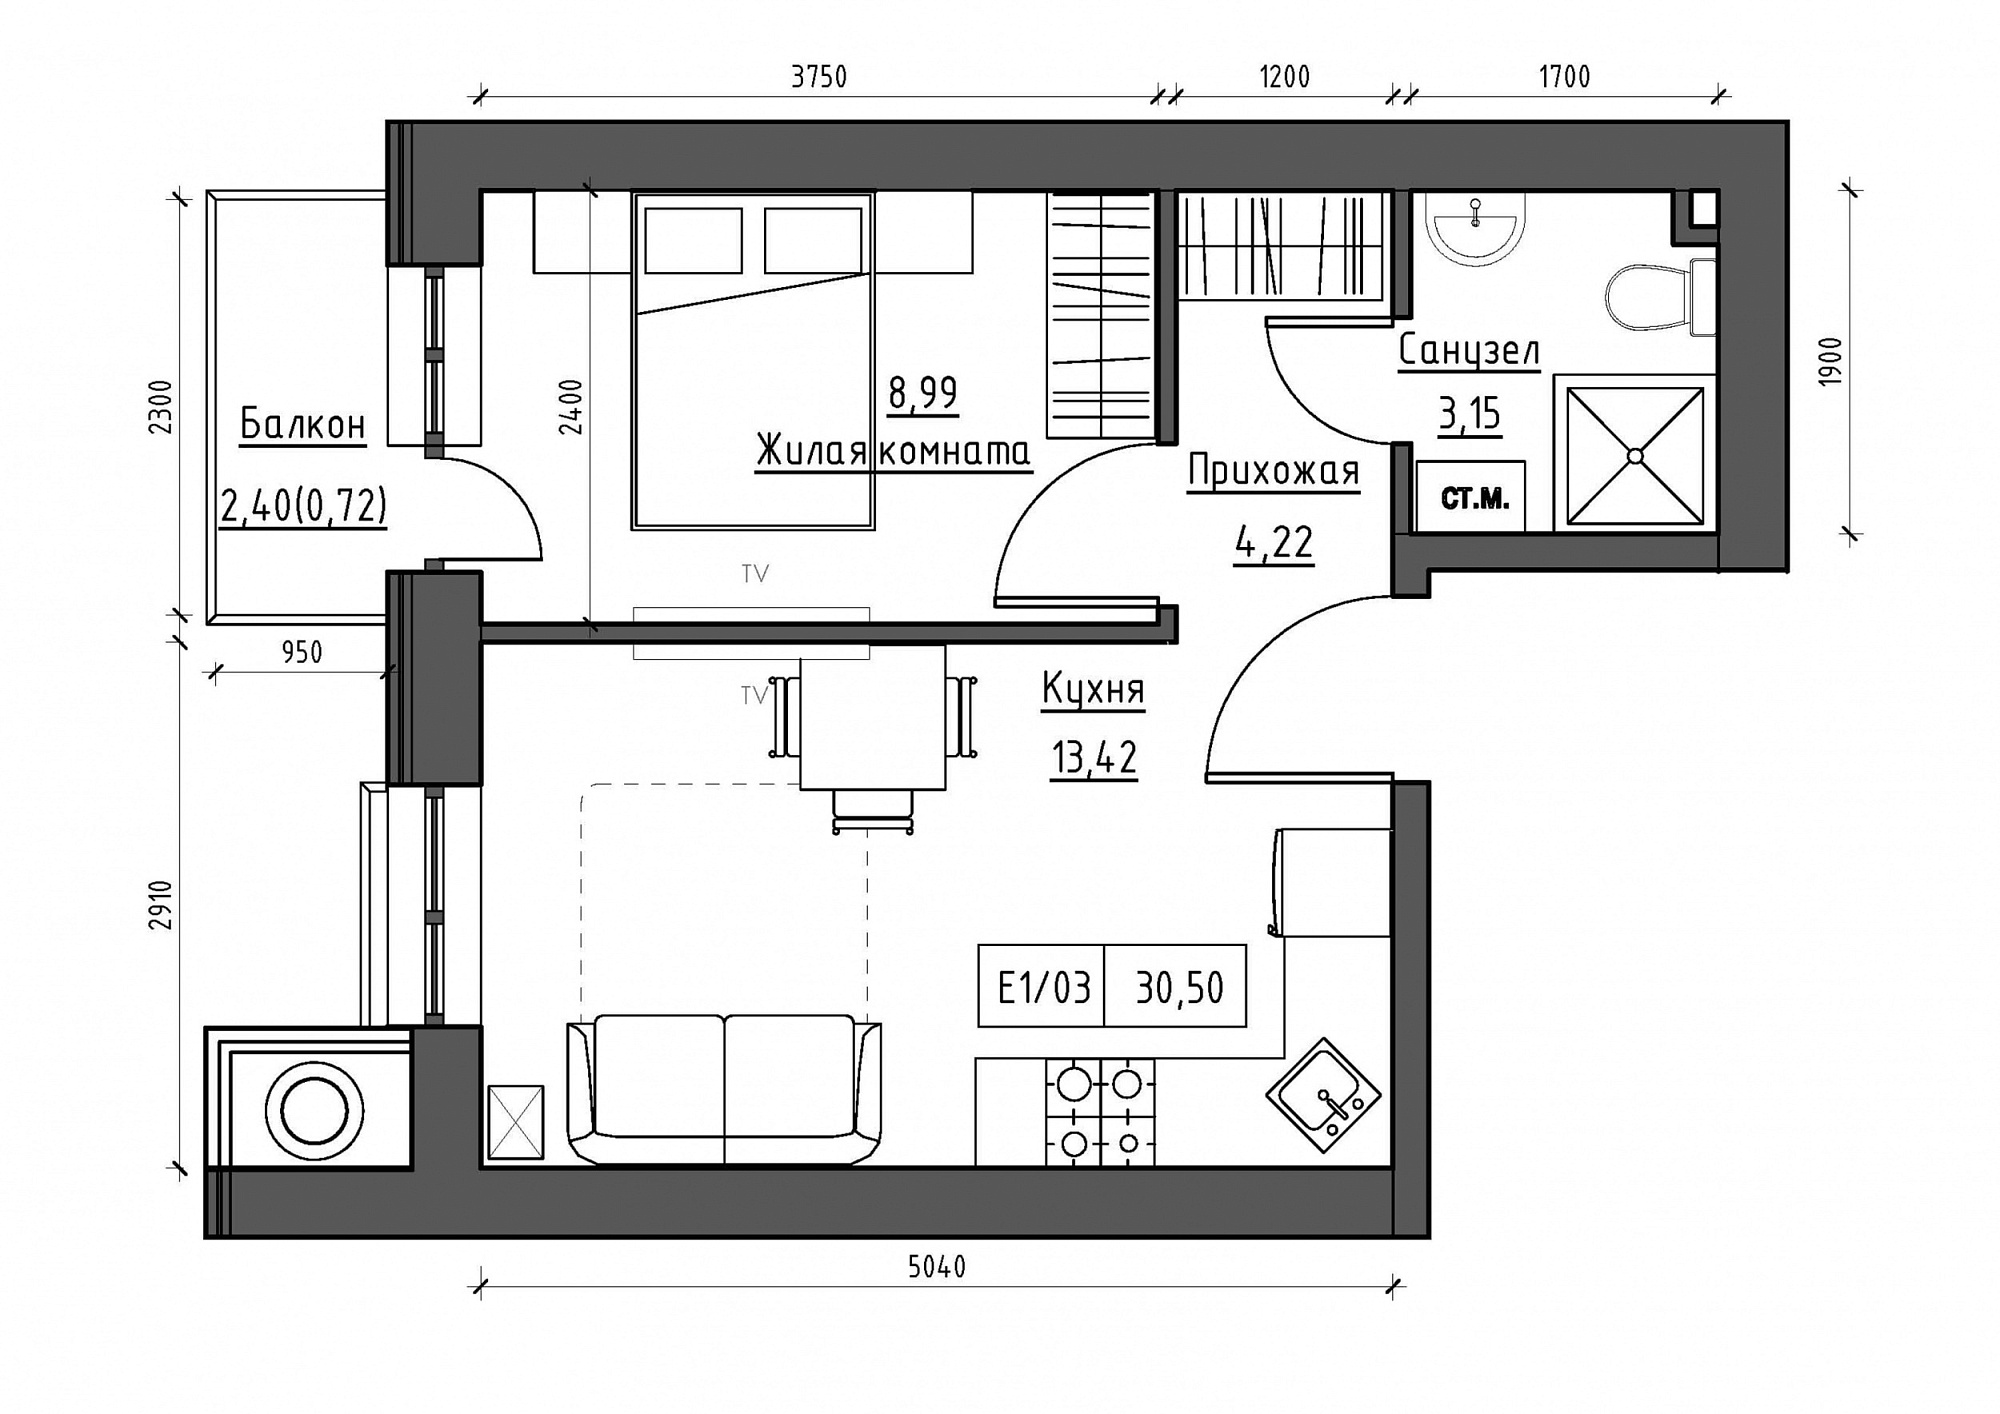 Планування 1-к квартира площею 30.5м2, KS-011-02/0003.